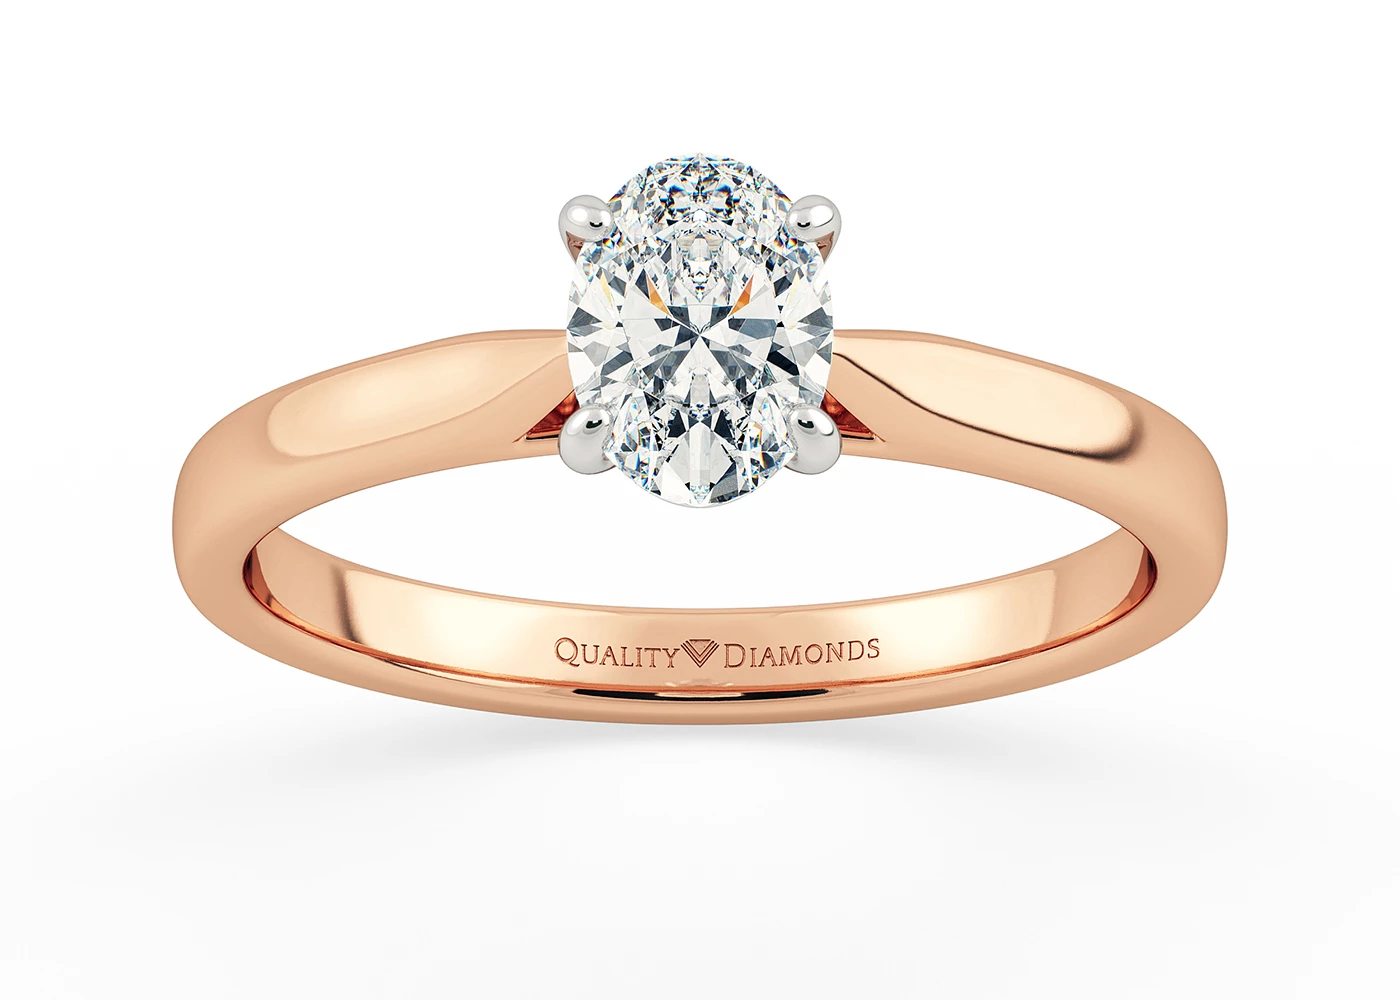 Oval Clara Diamond Ring in 18K Rose Gold